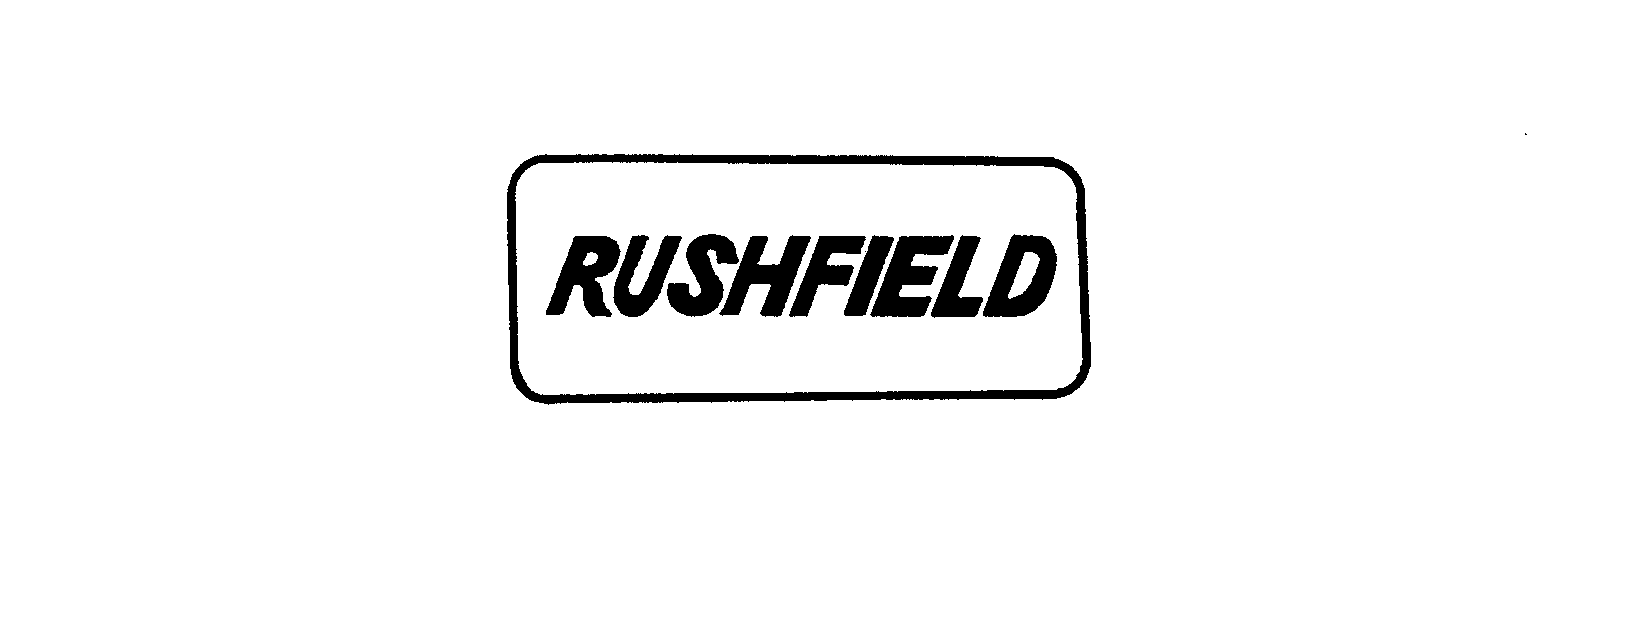  RUSHFIELD